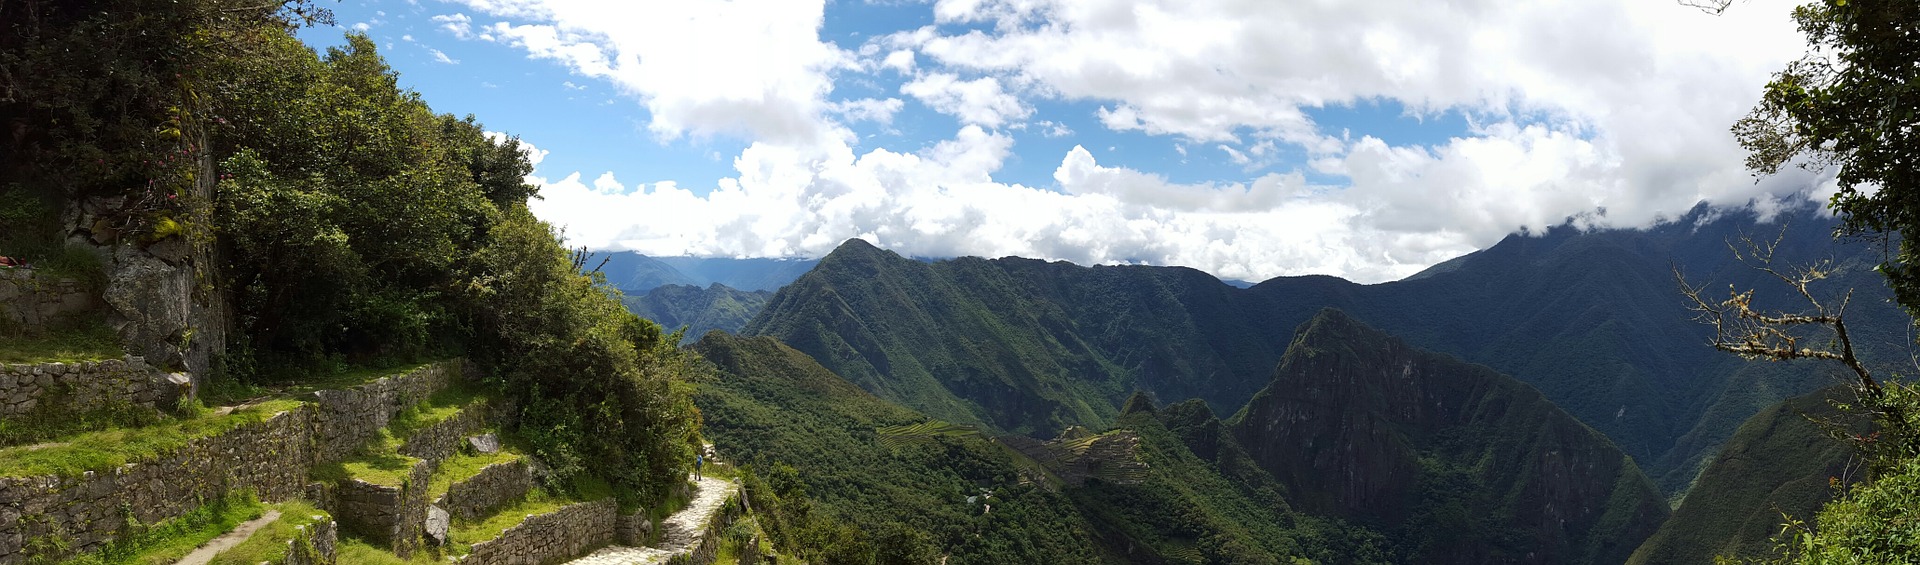 Volontariato internazionale in Perù per l’agricoltura biologica e il turismo sostenibile